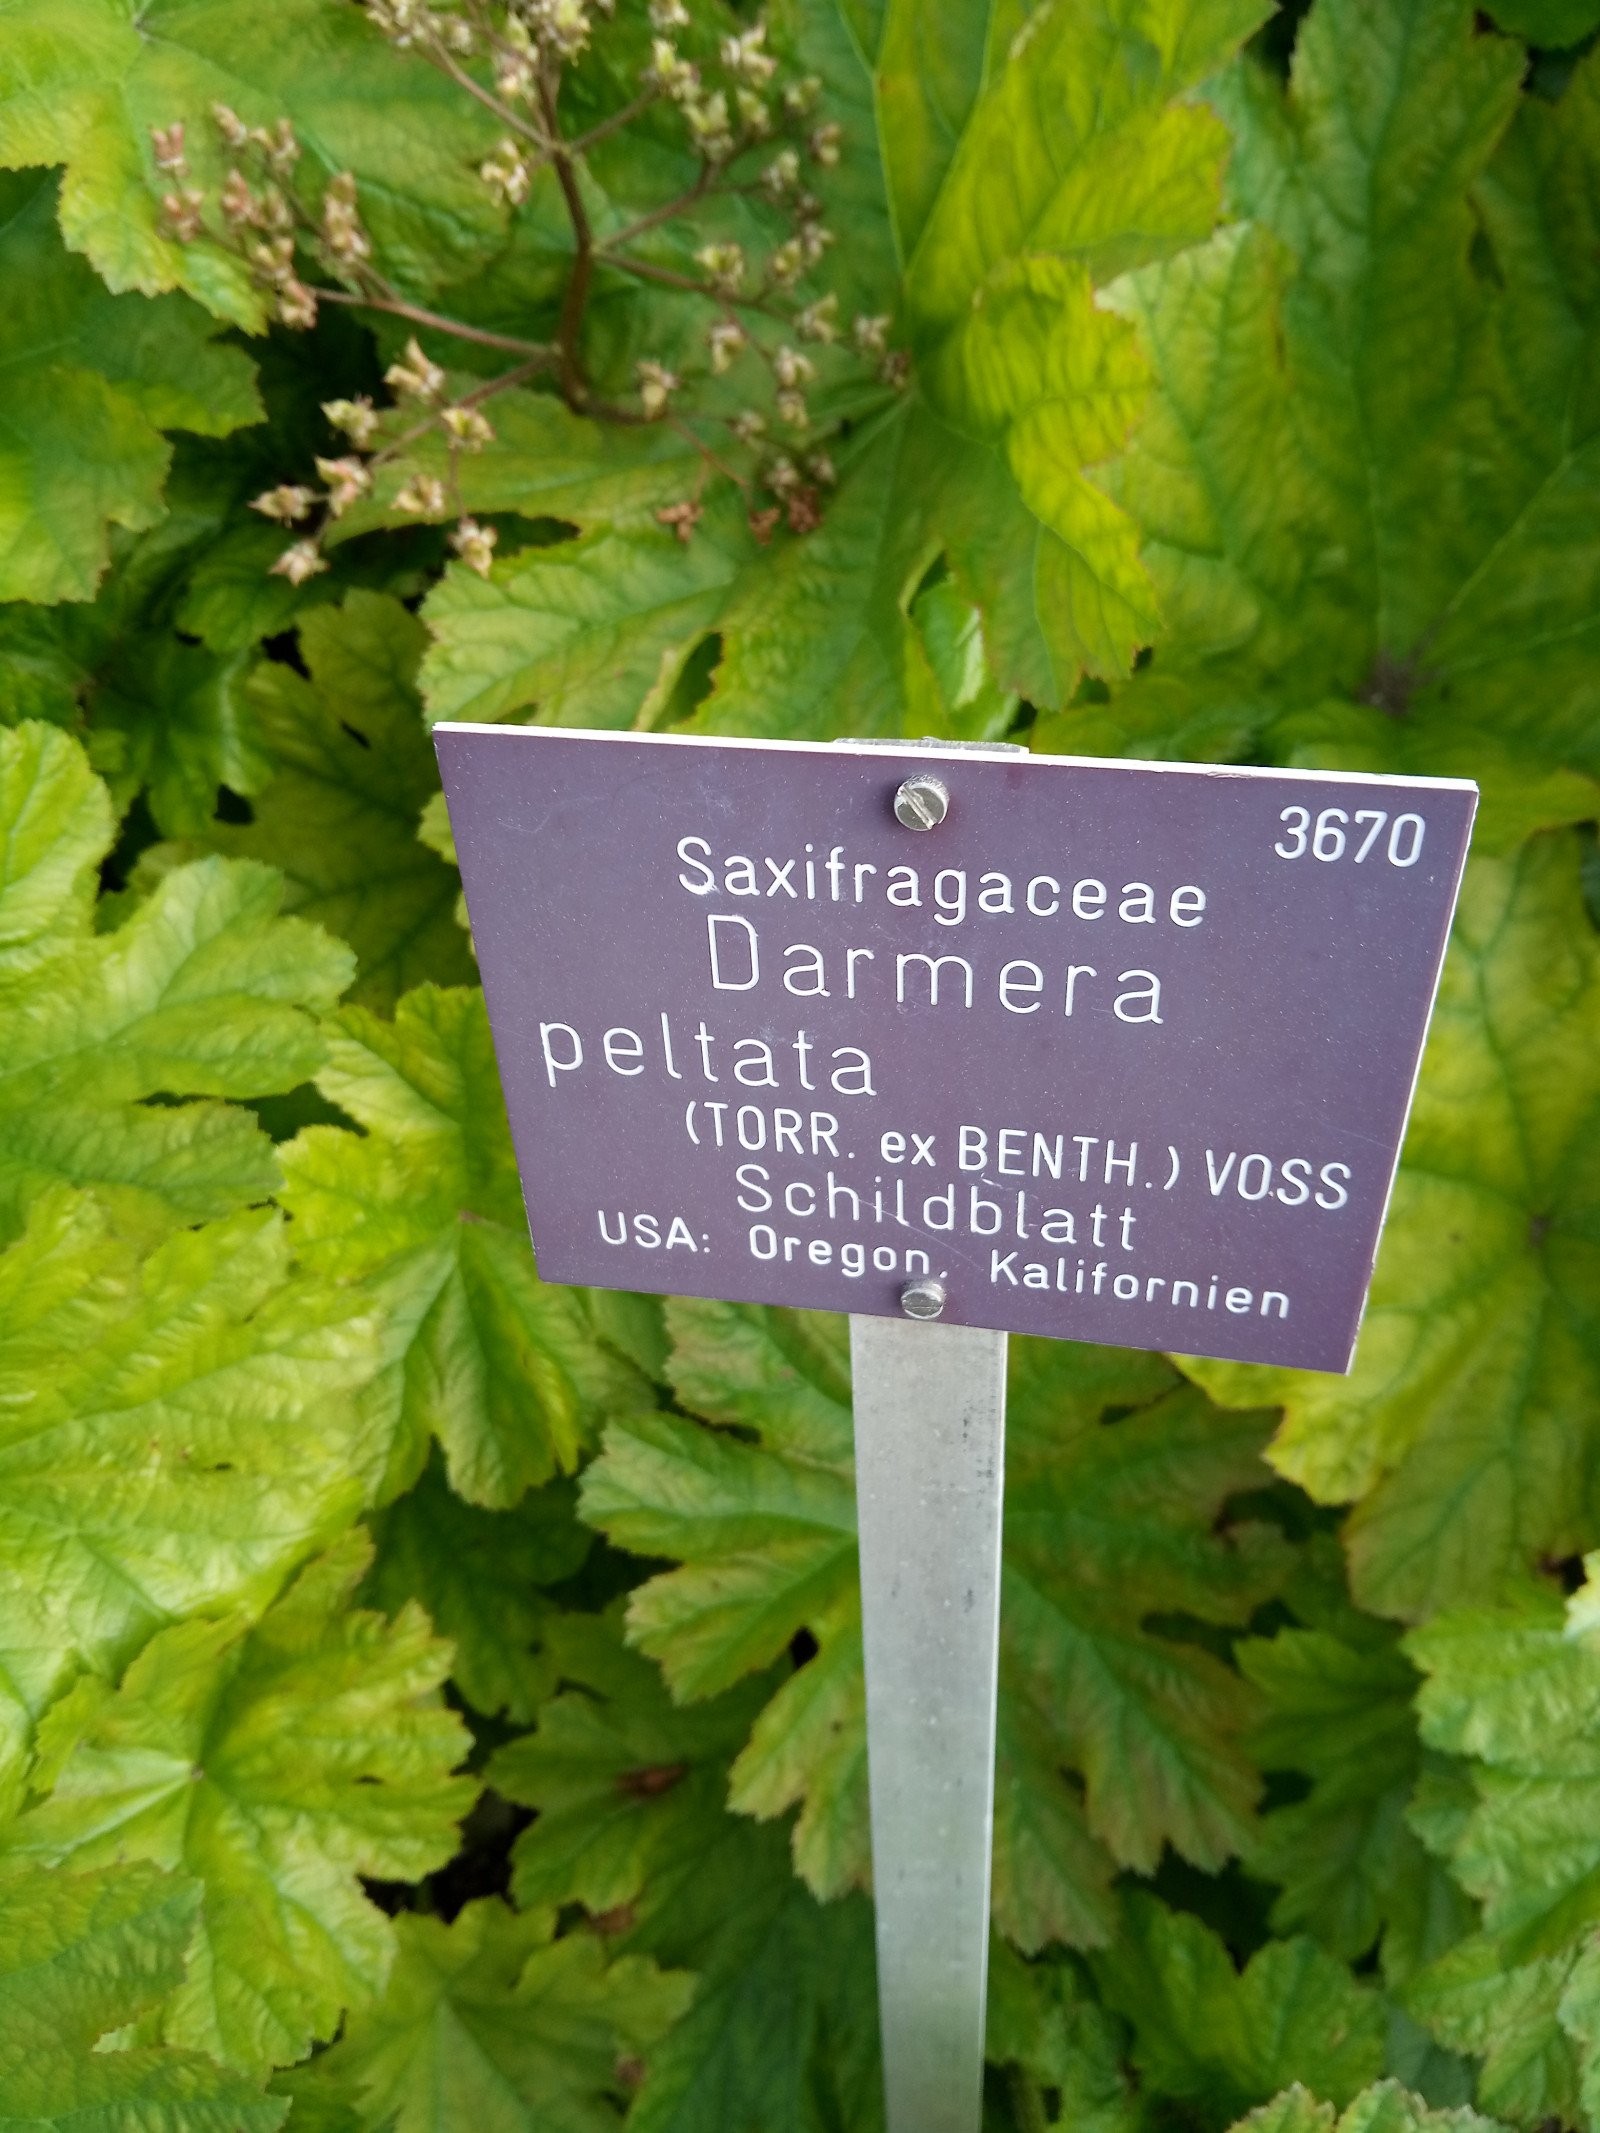 Darmera peltata - Entire plant